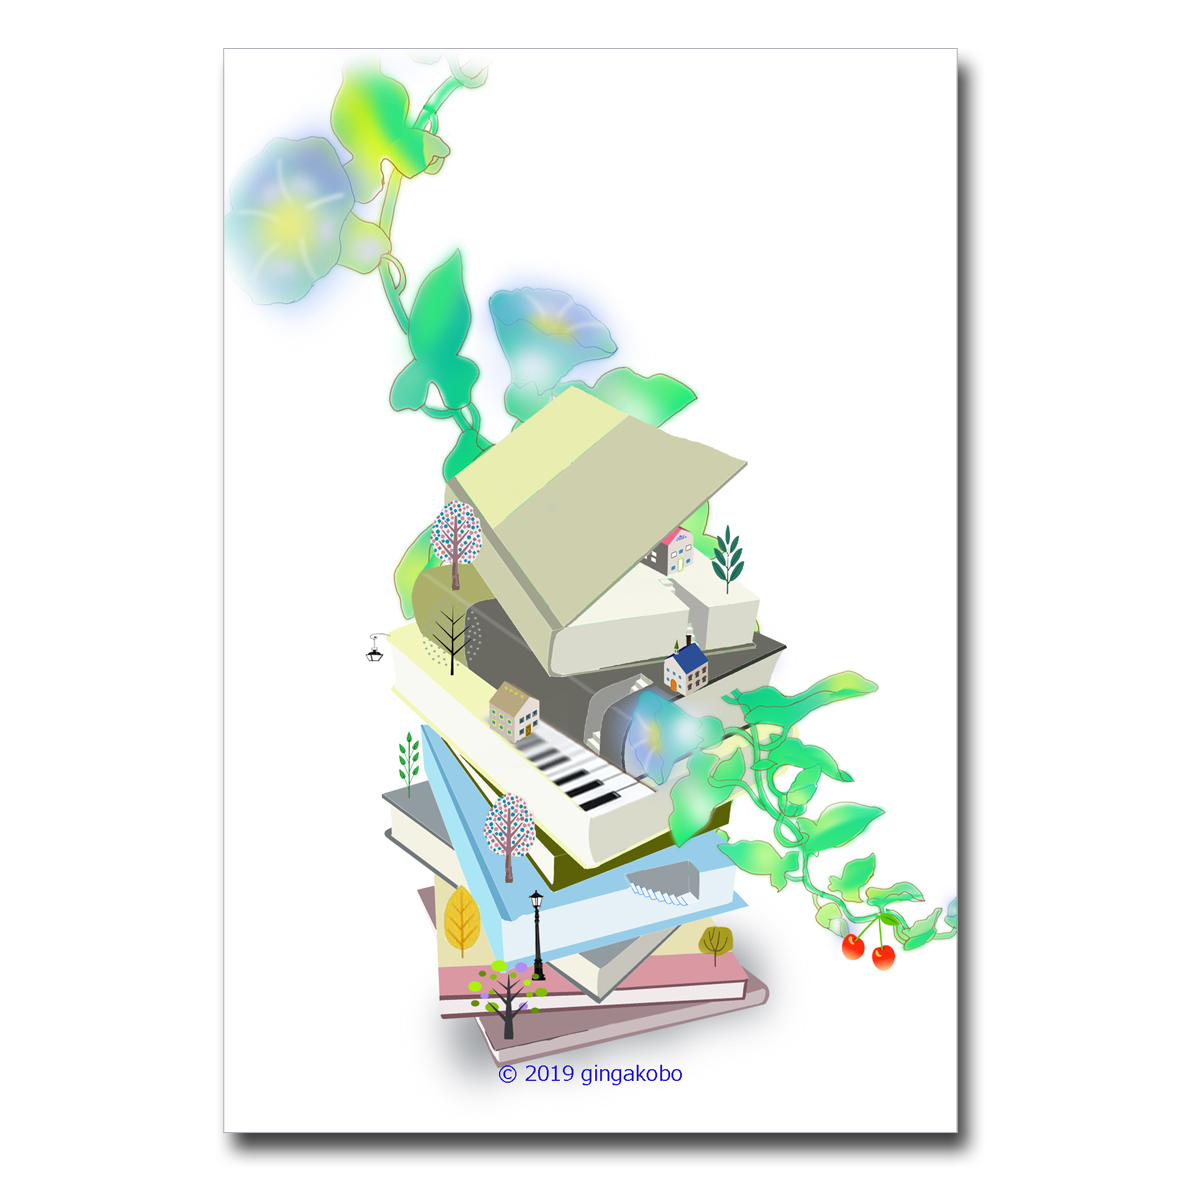 本屋の町に咲く朝顔 ほっこり癒しのイラストポストカード2枚組 No 814 Iichi ハンドメイド クラフト作品 手仕事品の通販